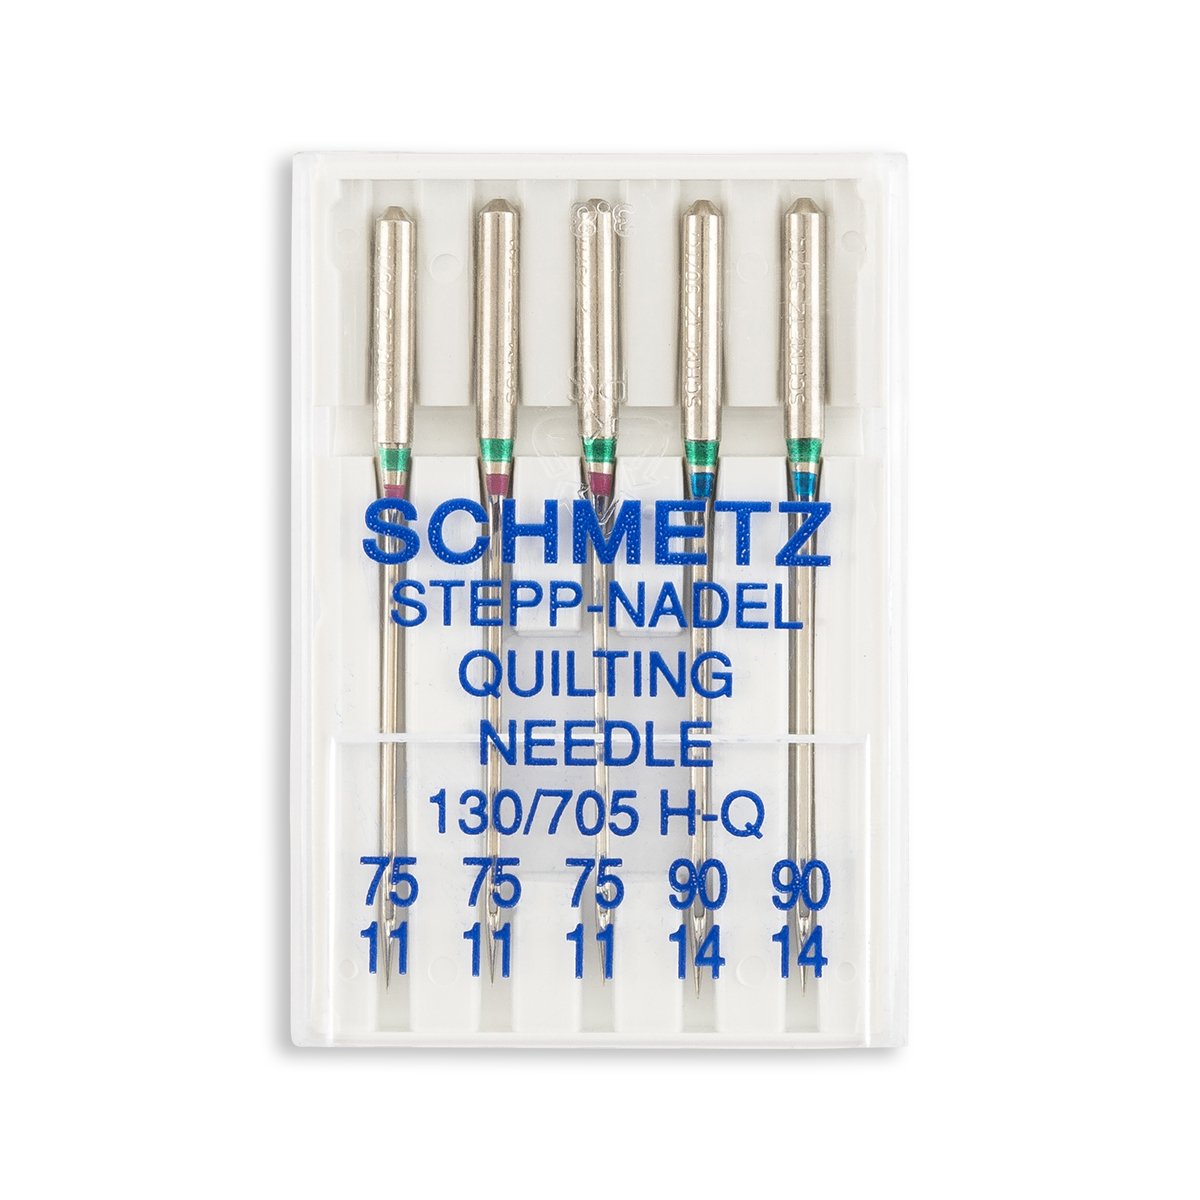 Schmetz Quilting 90/14 sewing machine needles - quilting